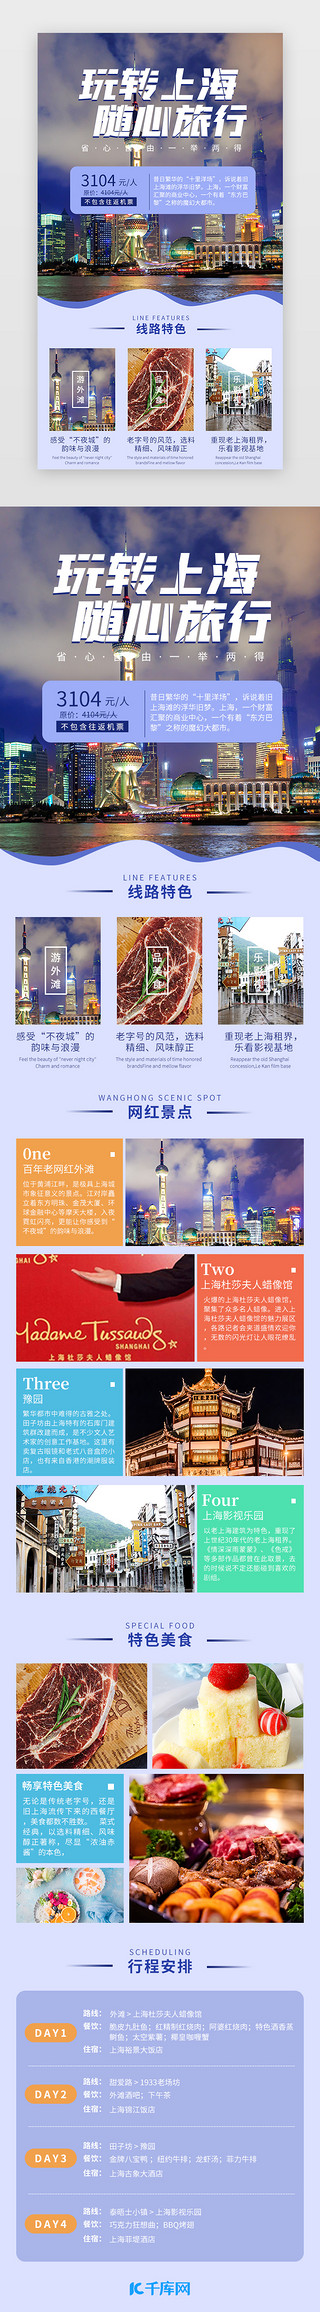 剪影老上海UI设计素材_玩转上海 随心旅行 蓝色简约景点介绍H5